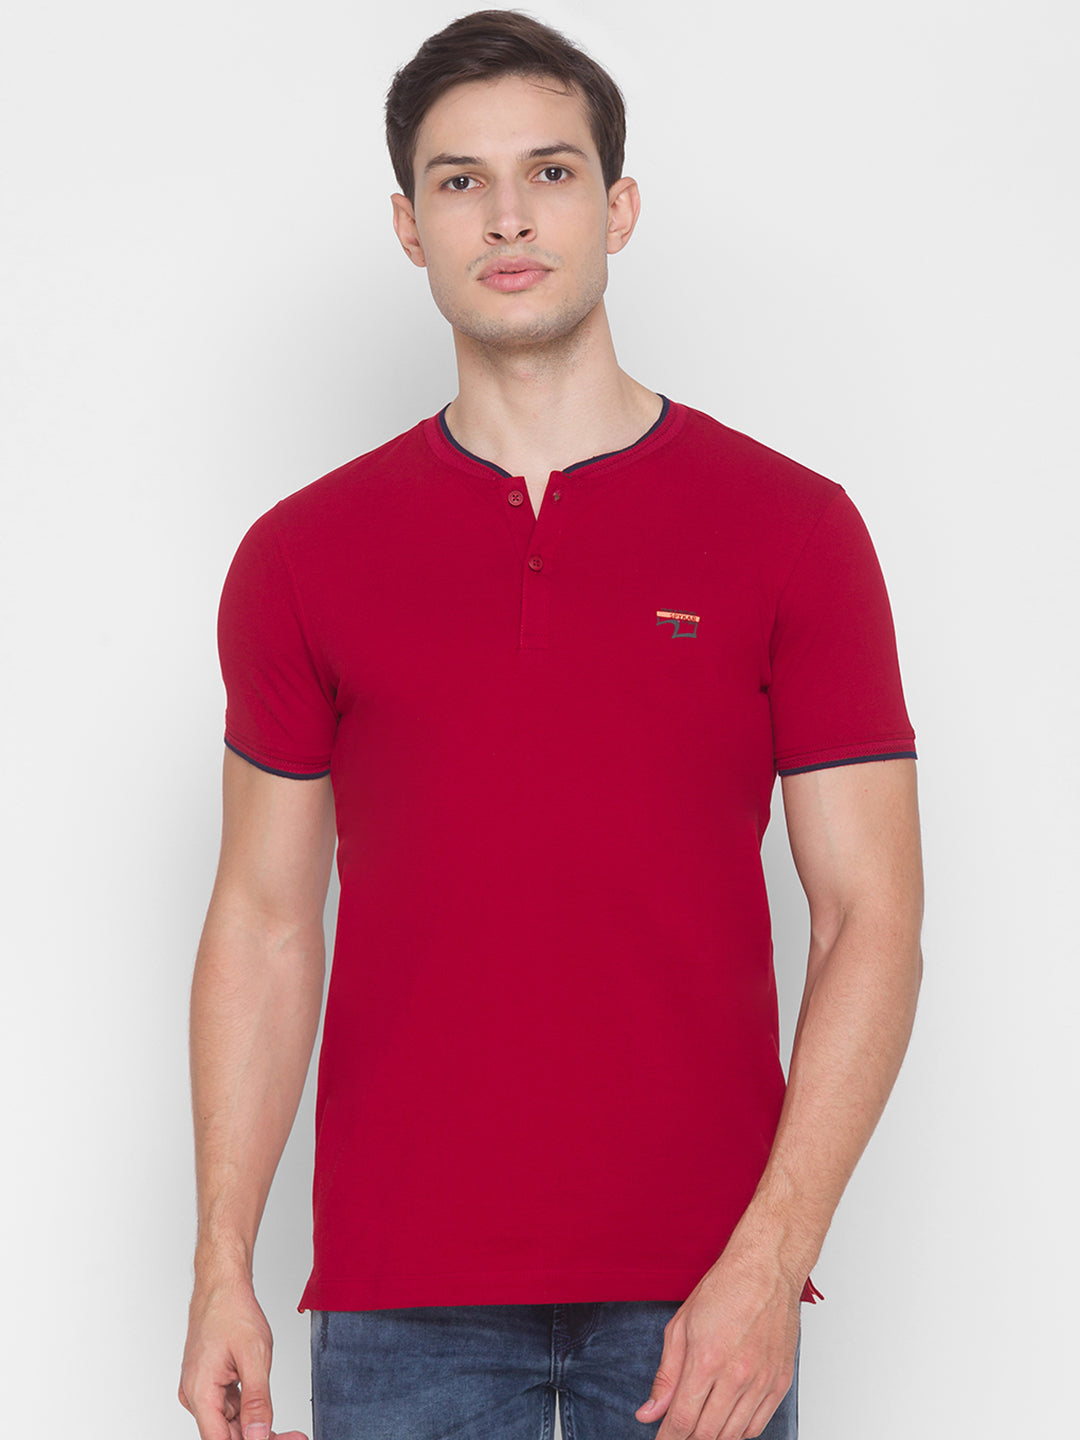 Spykar Men Red Cotton Slim Fit Round Neck T-Shirt